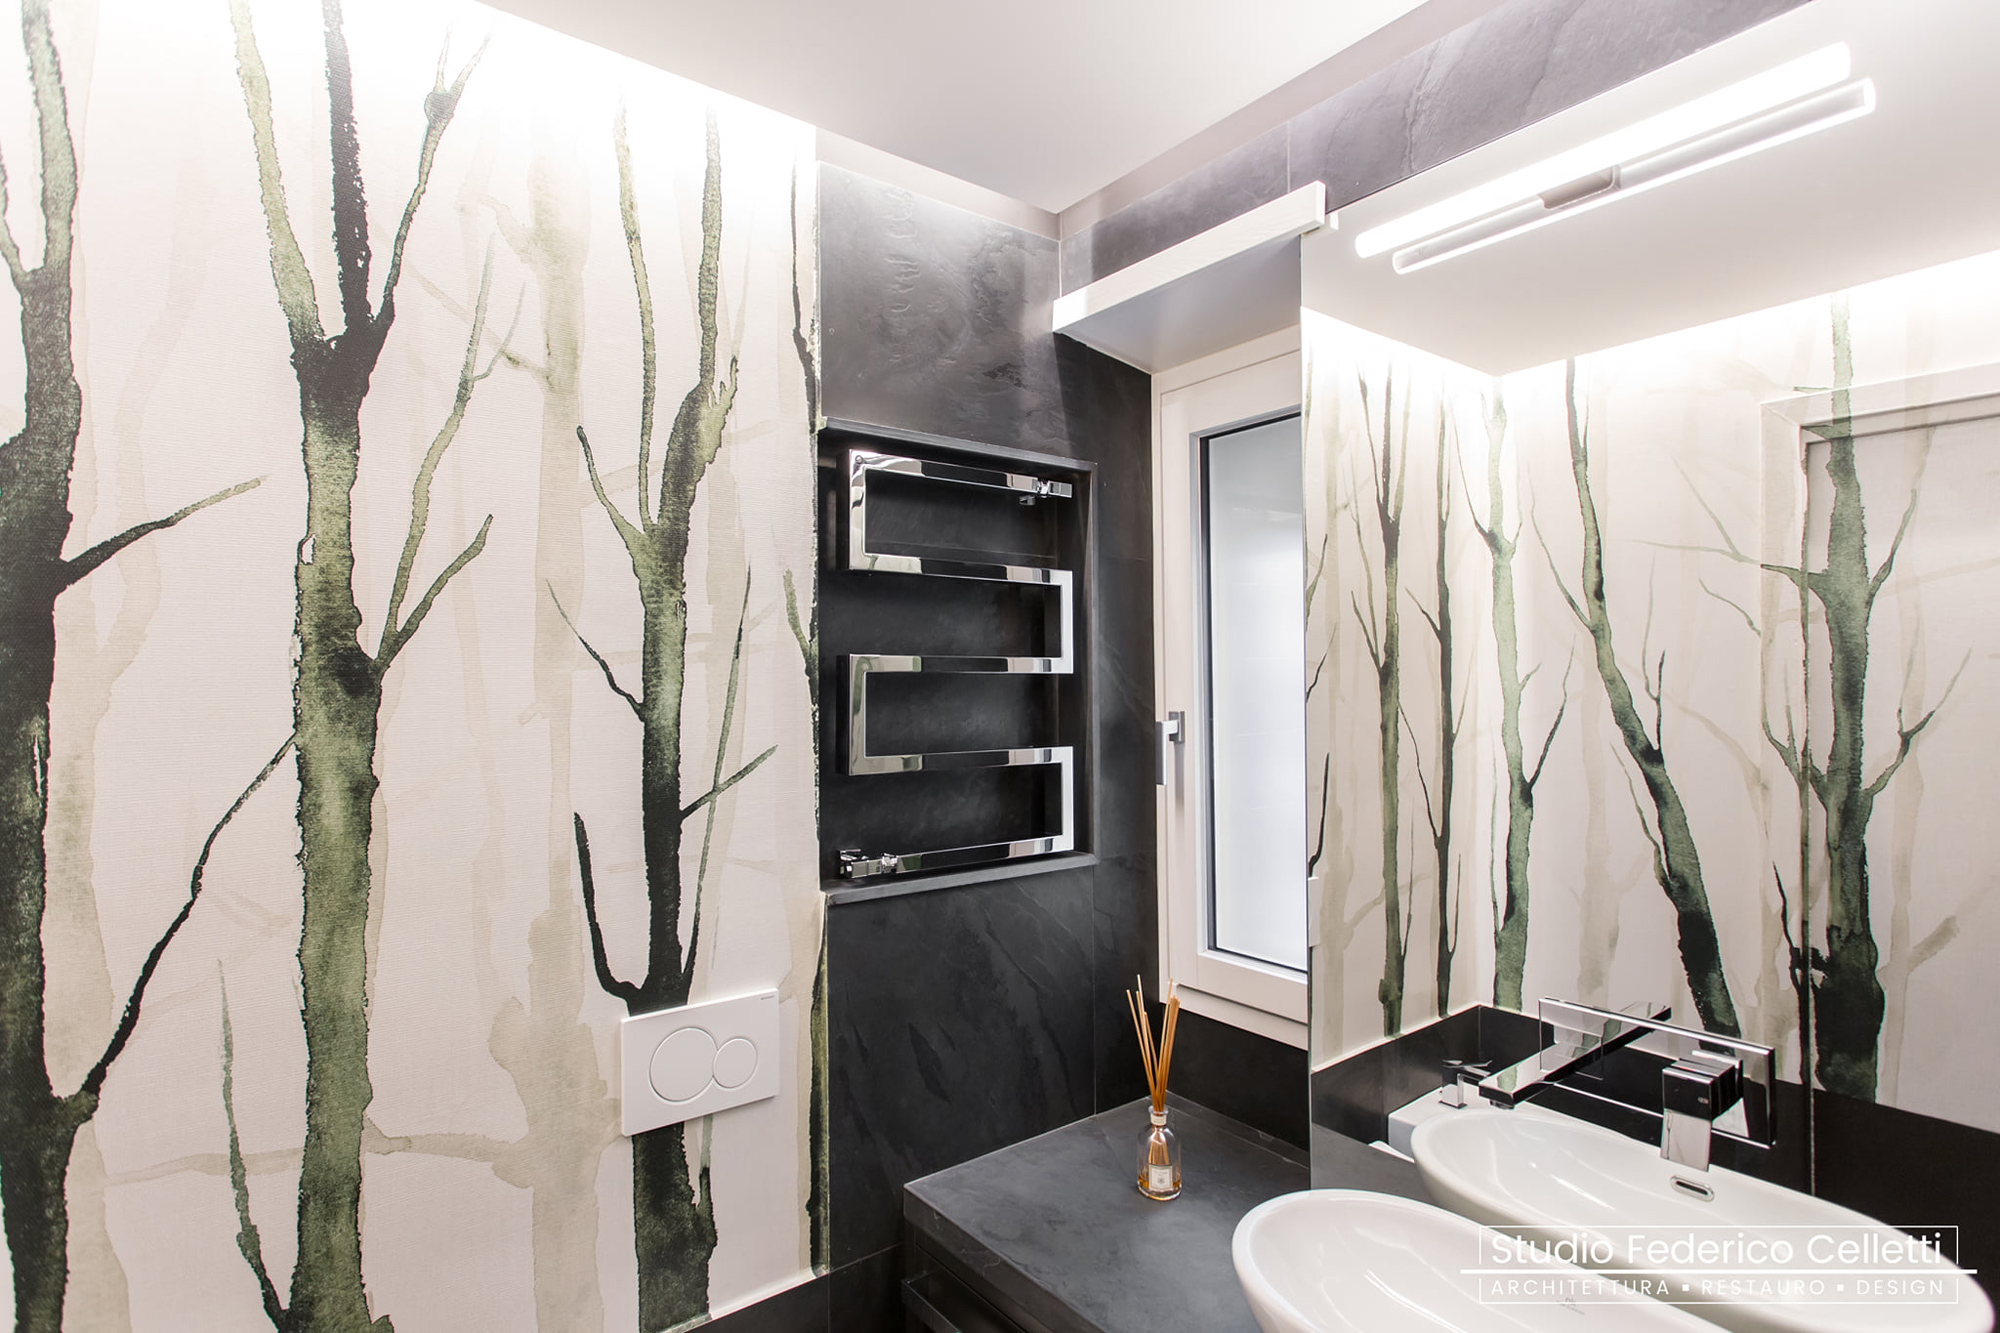 Bathroom design – Private Project by Studio Celletti Architetti